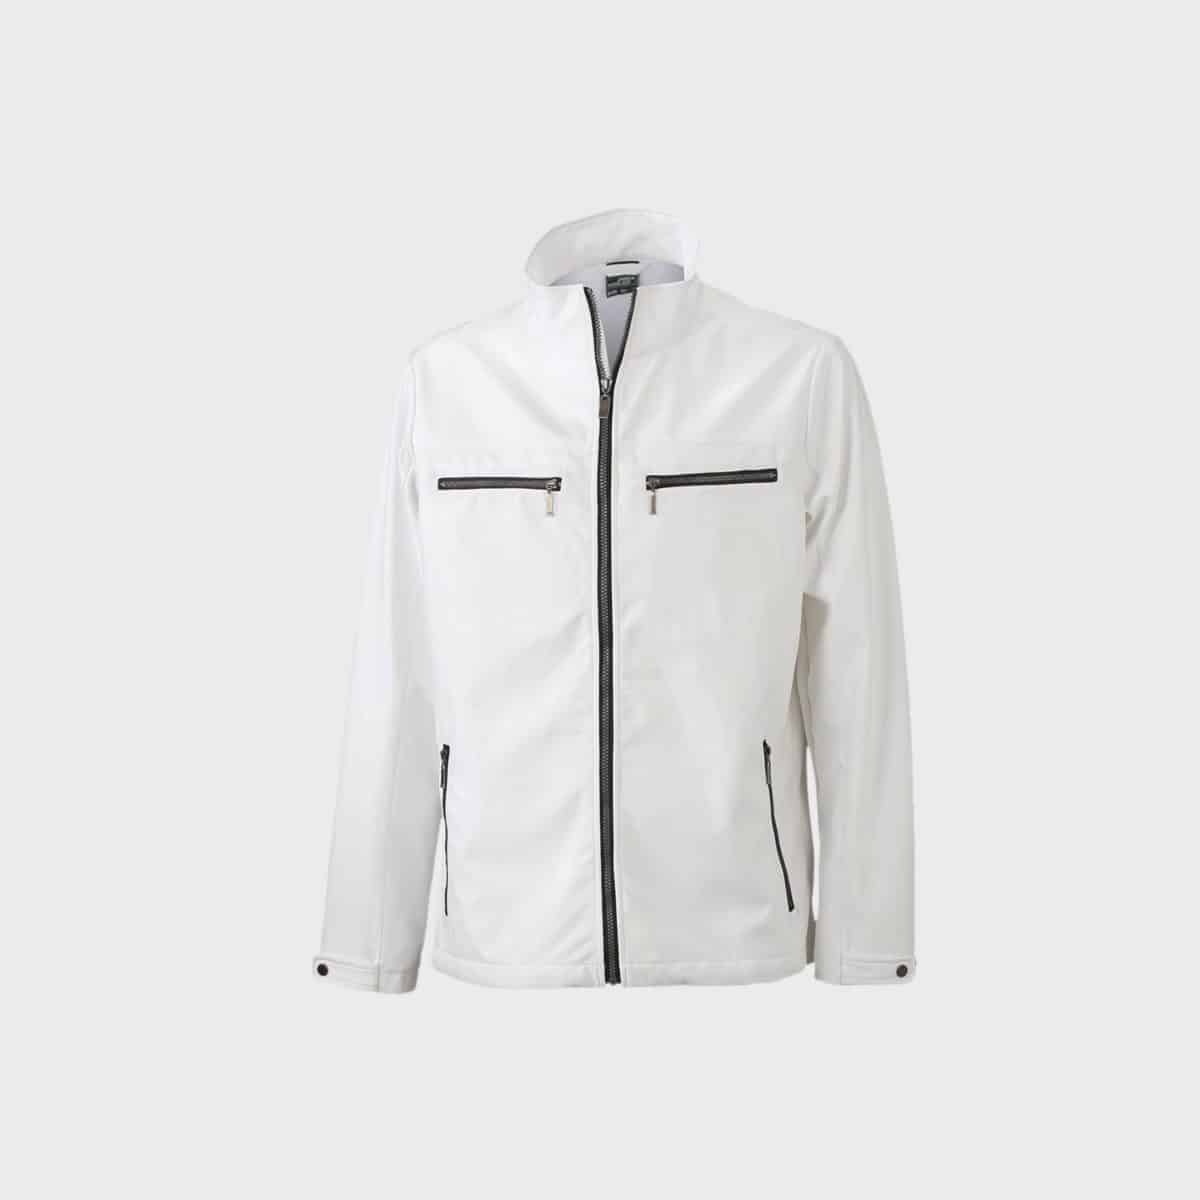 giacca softshell.-uomo-tailored-bianco-acquistare-ricamare_la_fabbricazione